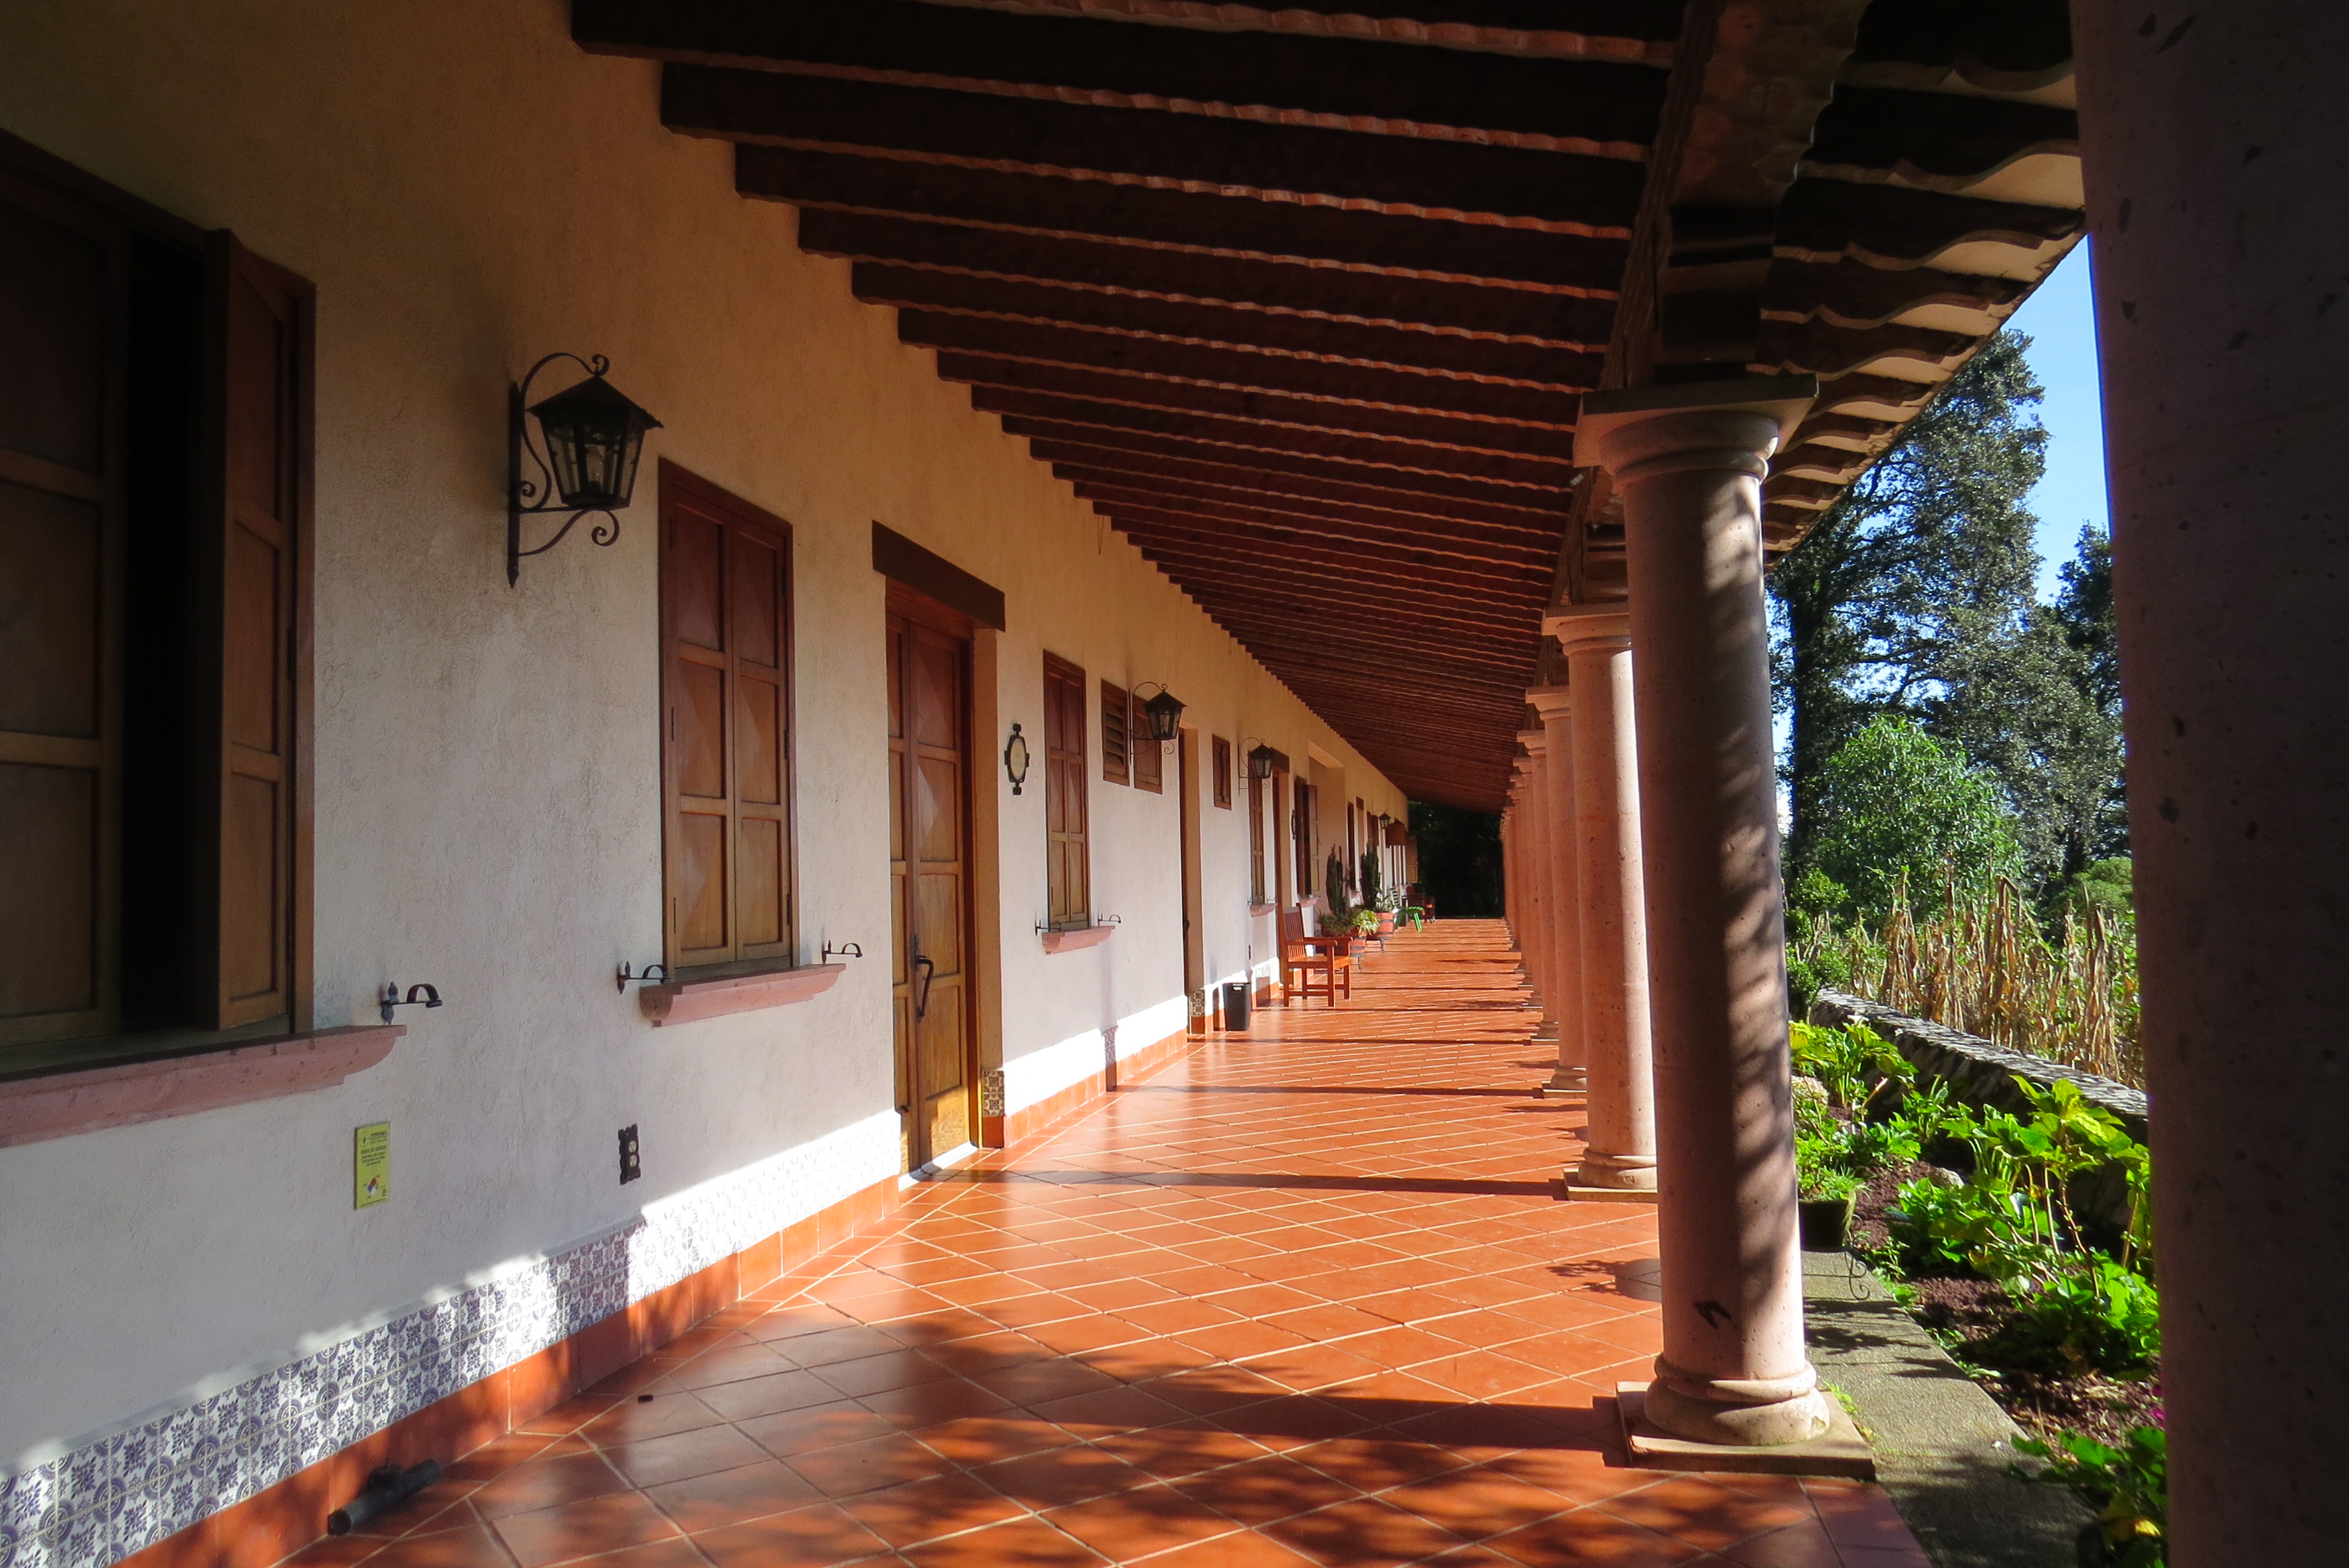 Centro misionero y de espiritualidad de Chilapa, Pico de Orizaba